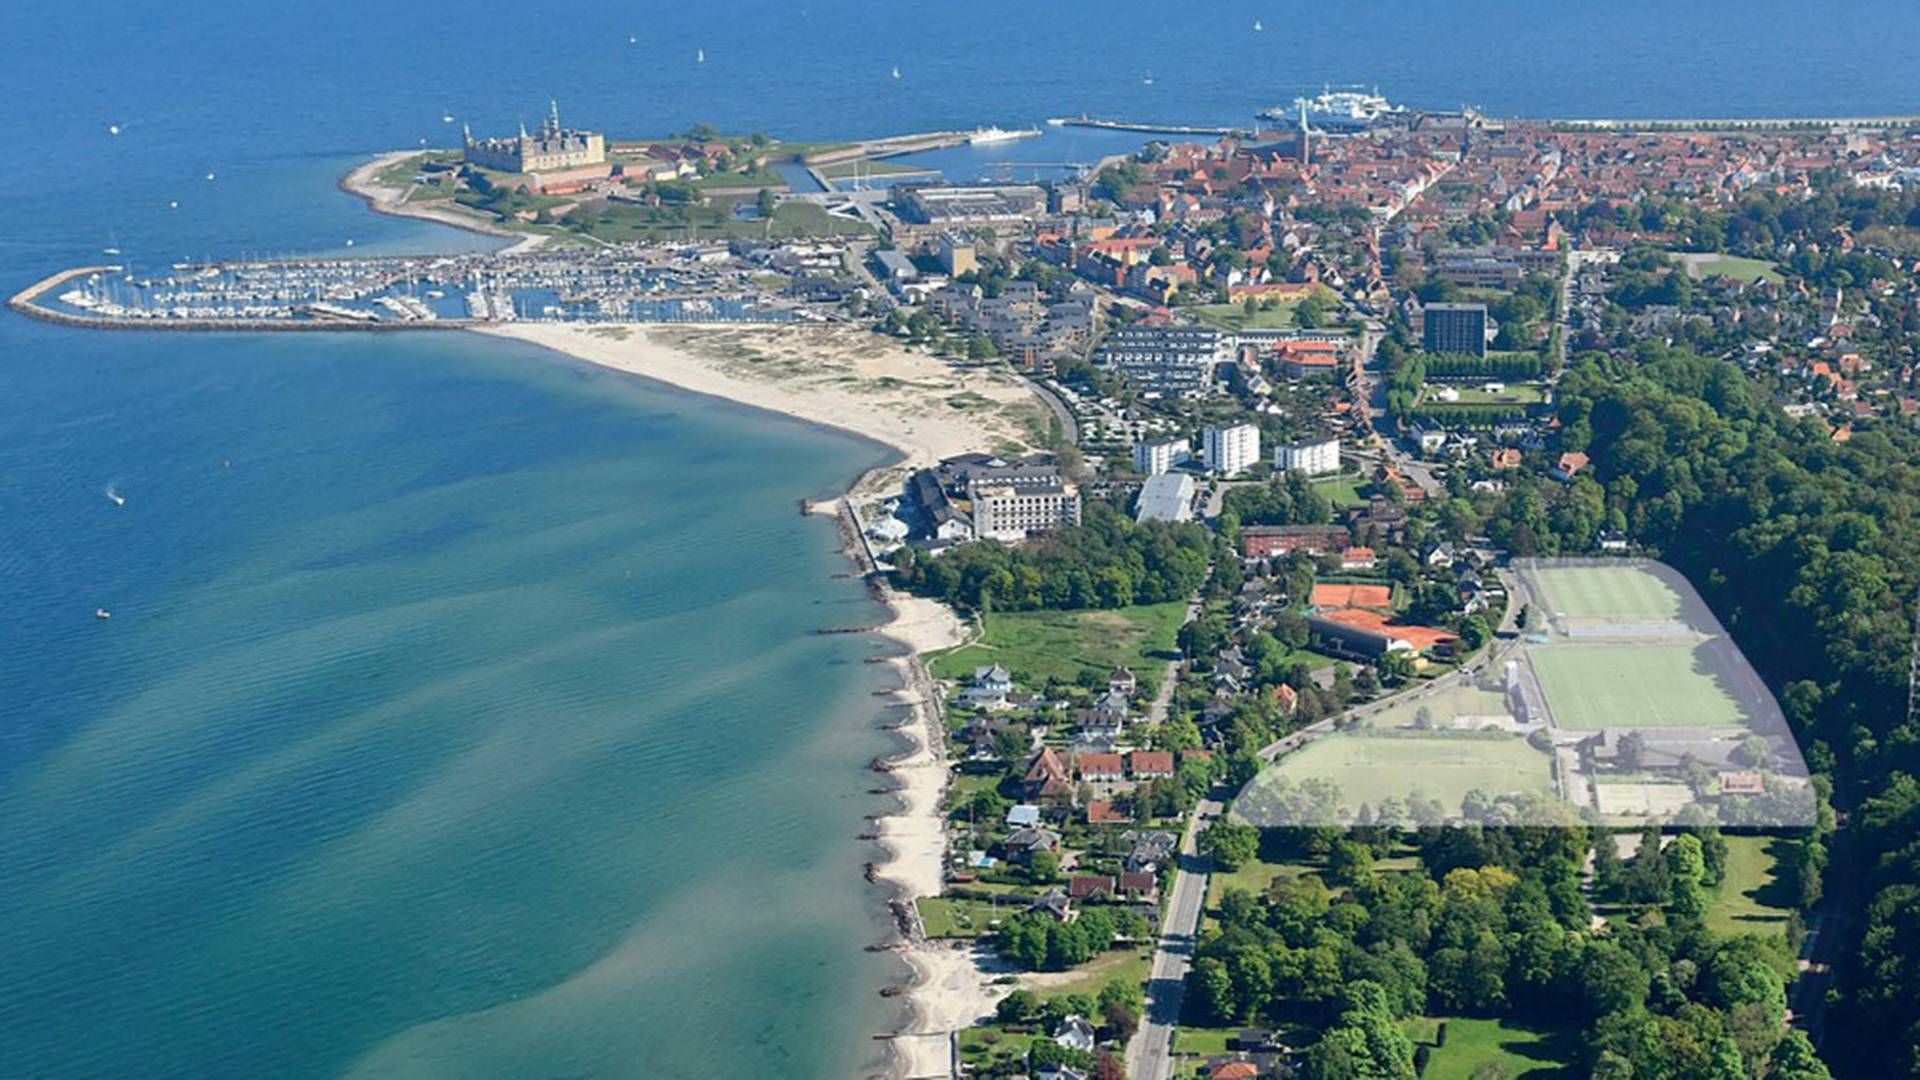 Med tæt afstand til Kronborg, Øresund og Marienlyst Strandhotel vil de kommende boliger få en sjælden attraktiv placering i domkirkebyen Helsingør. | Foto: PR